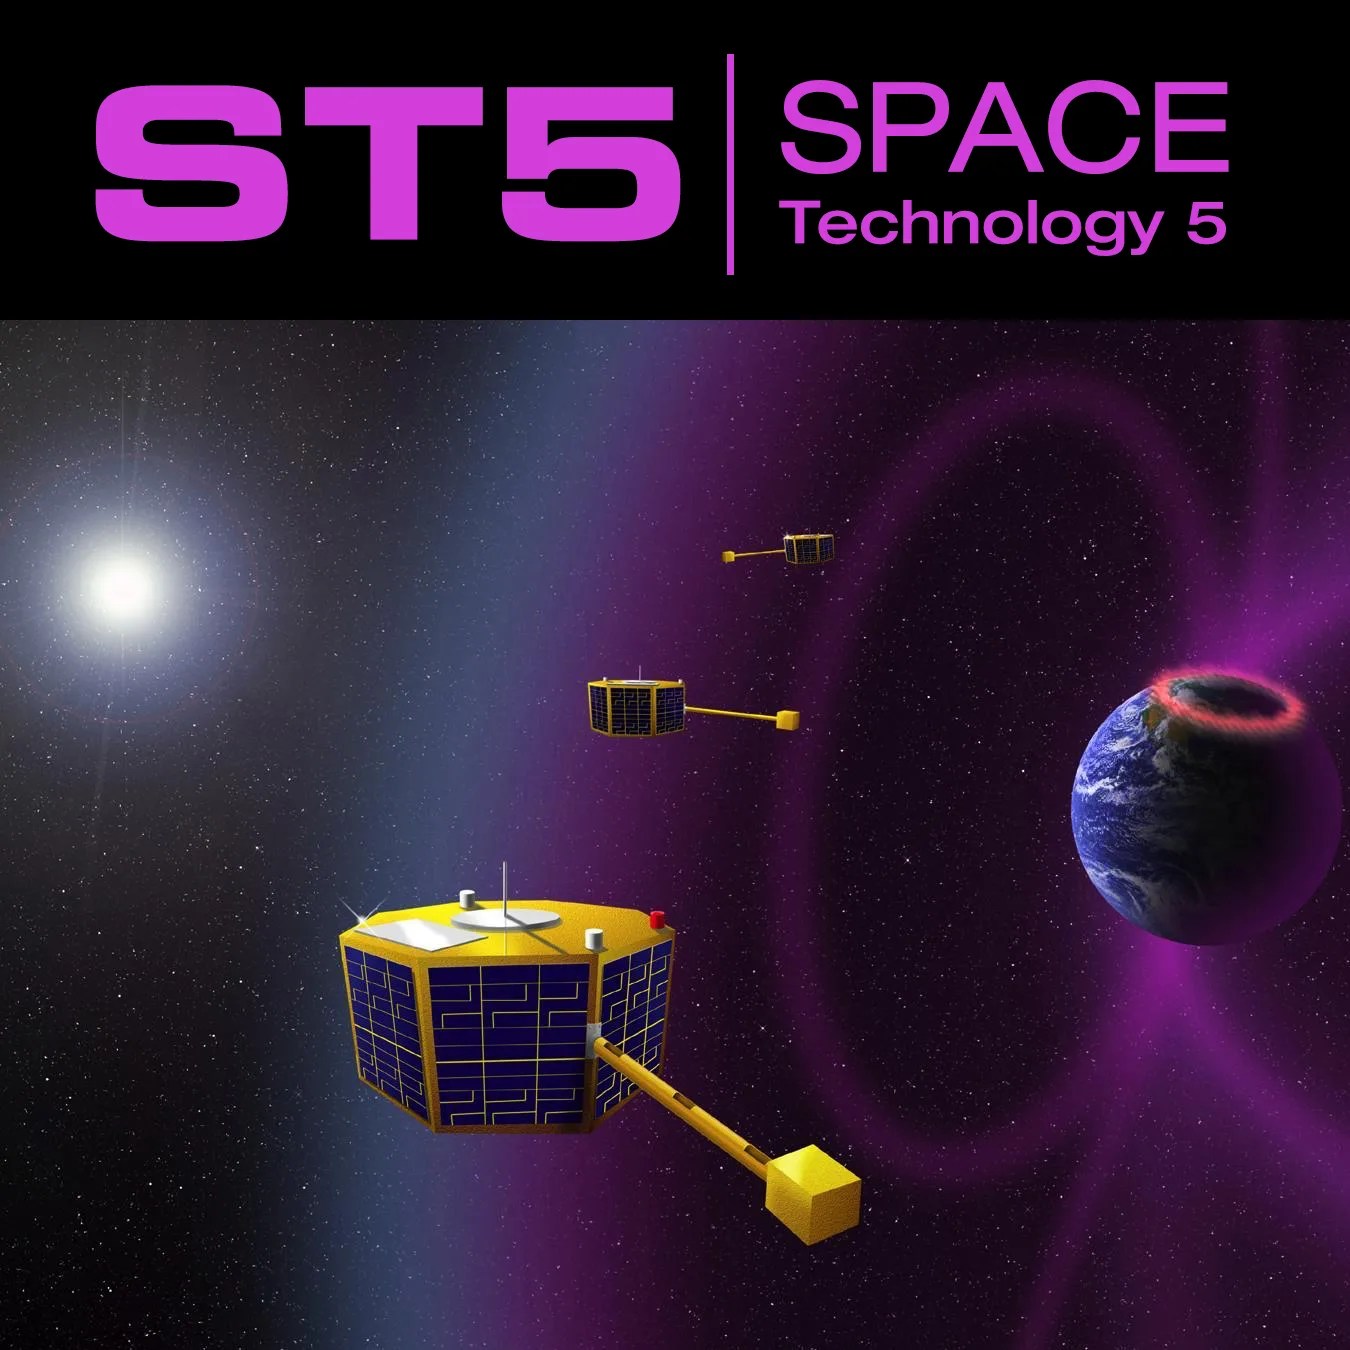 ST5 Mission Images